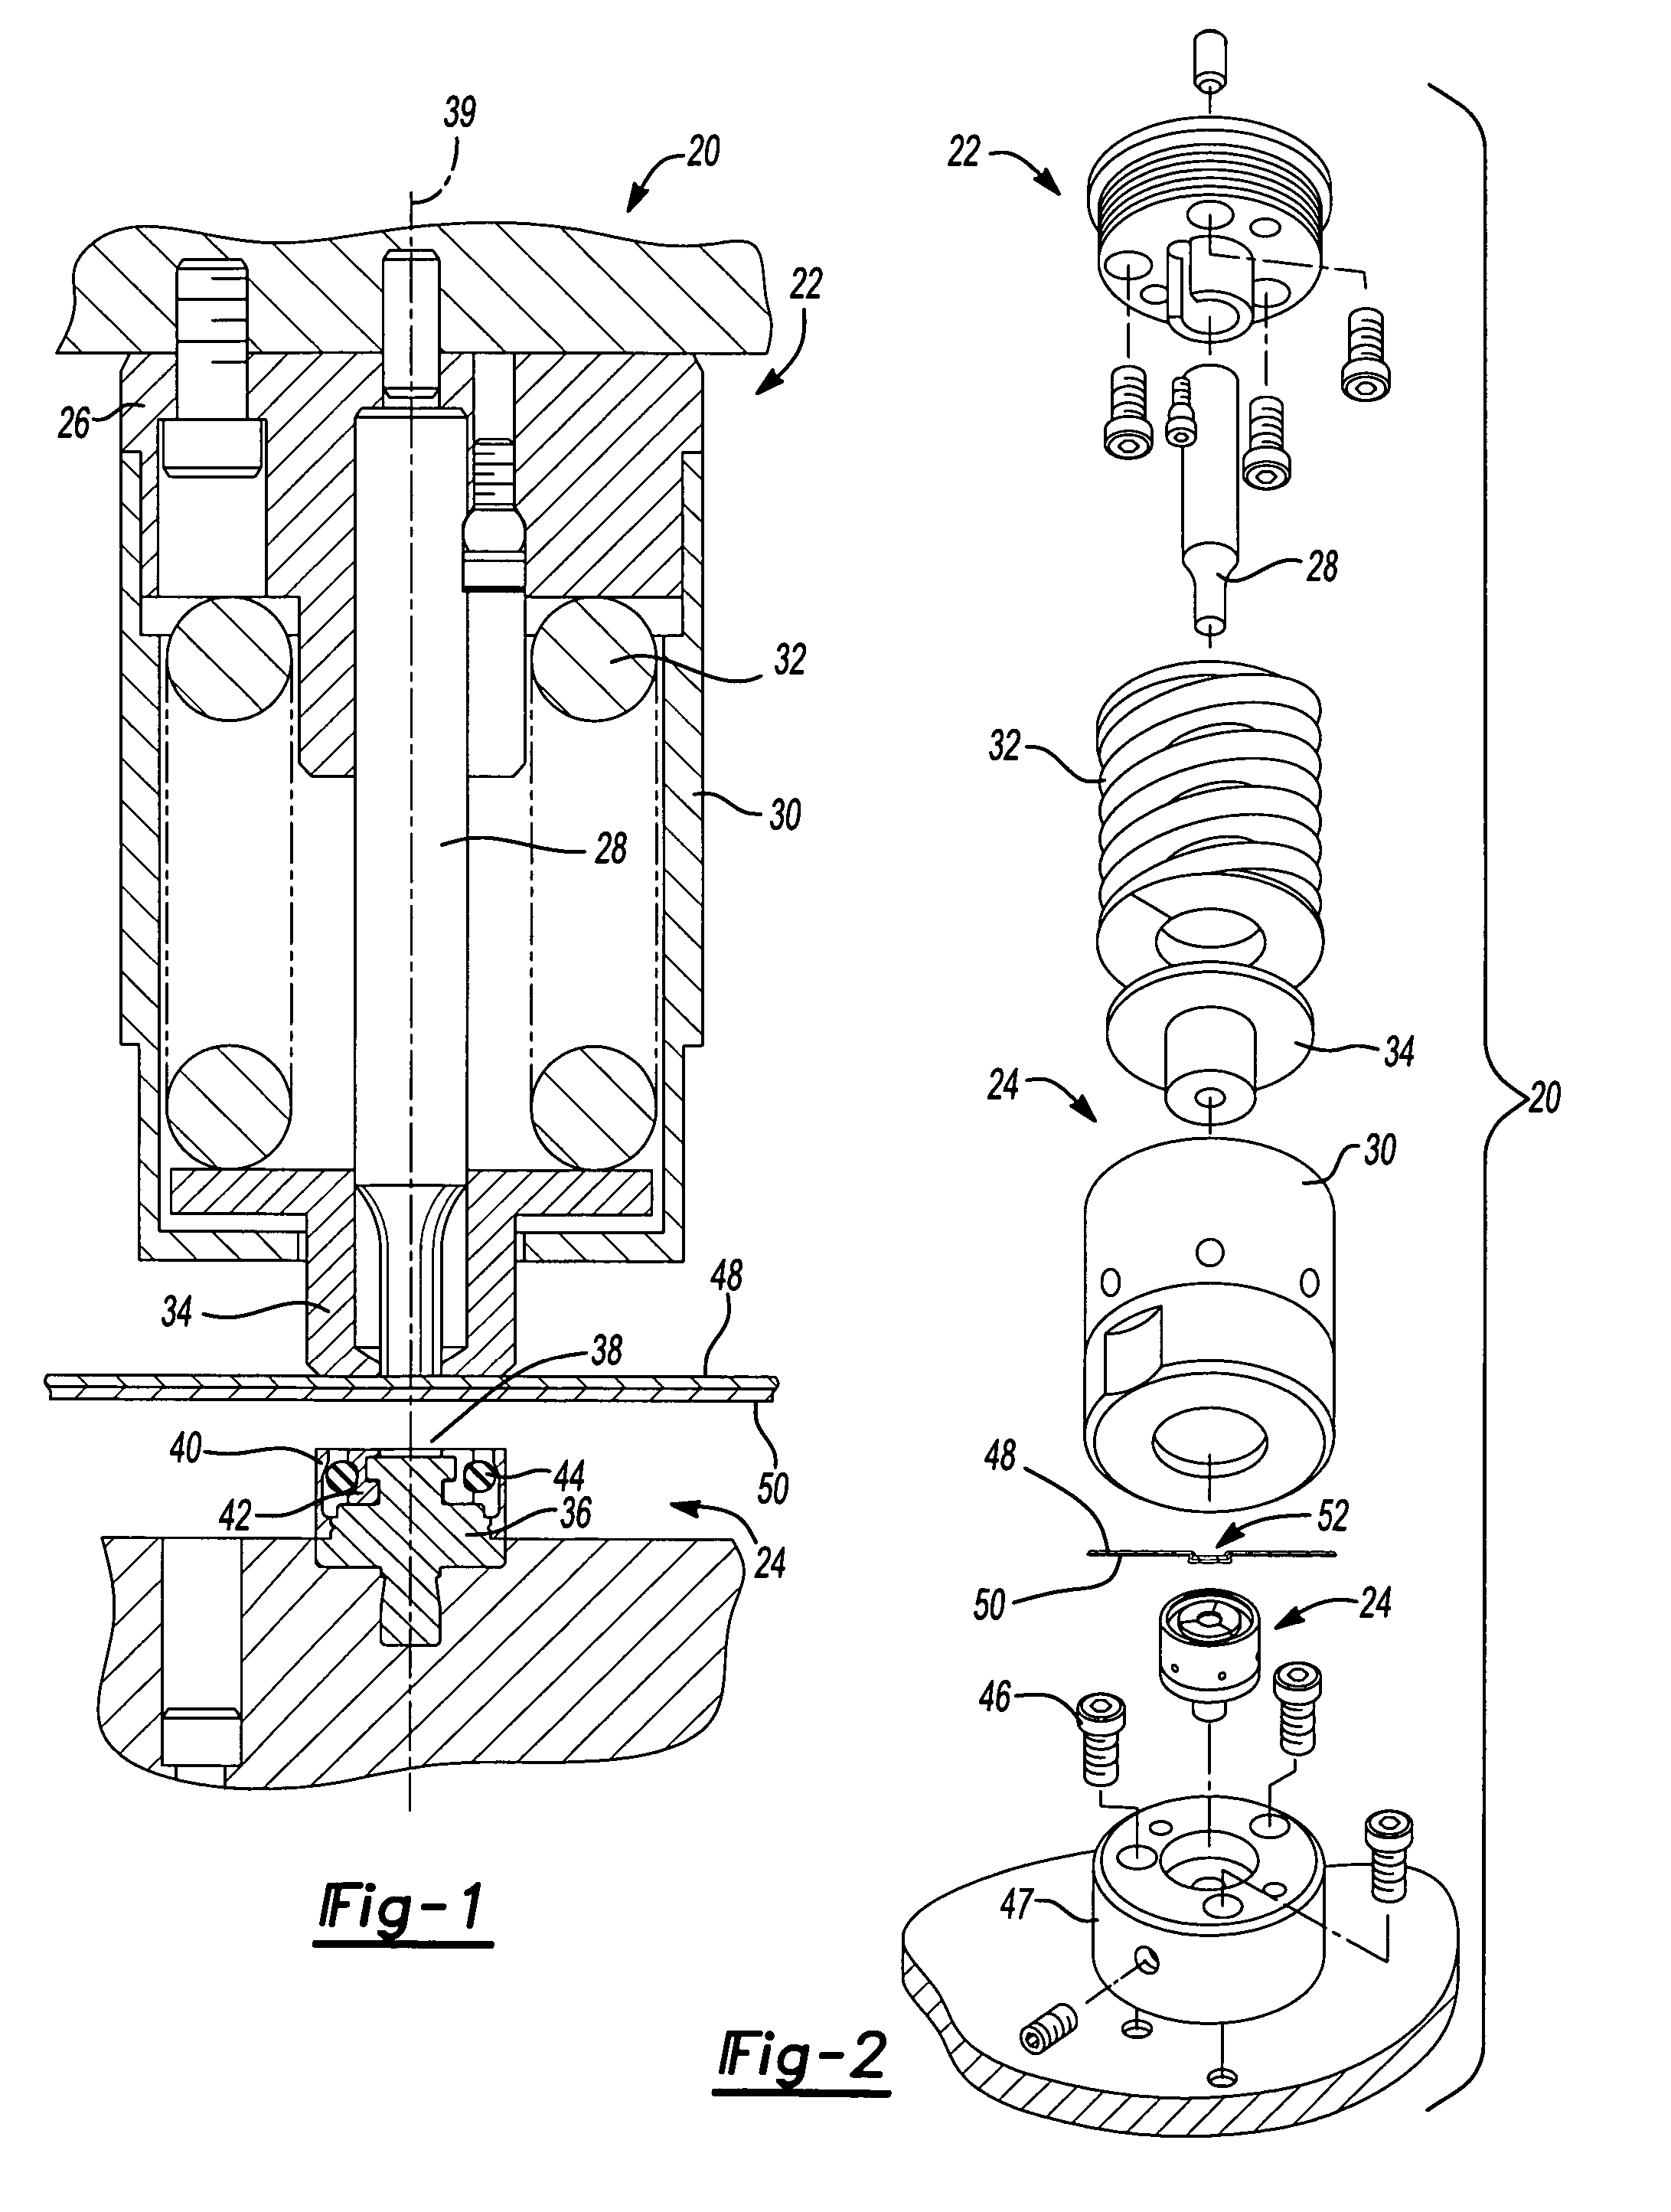 Sheet fastening apparatus and method